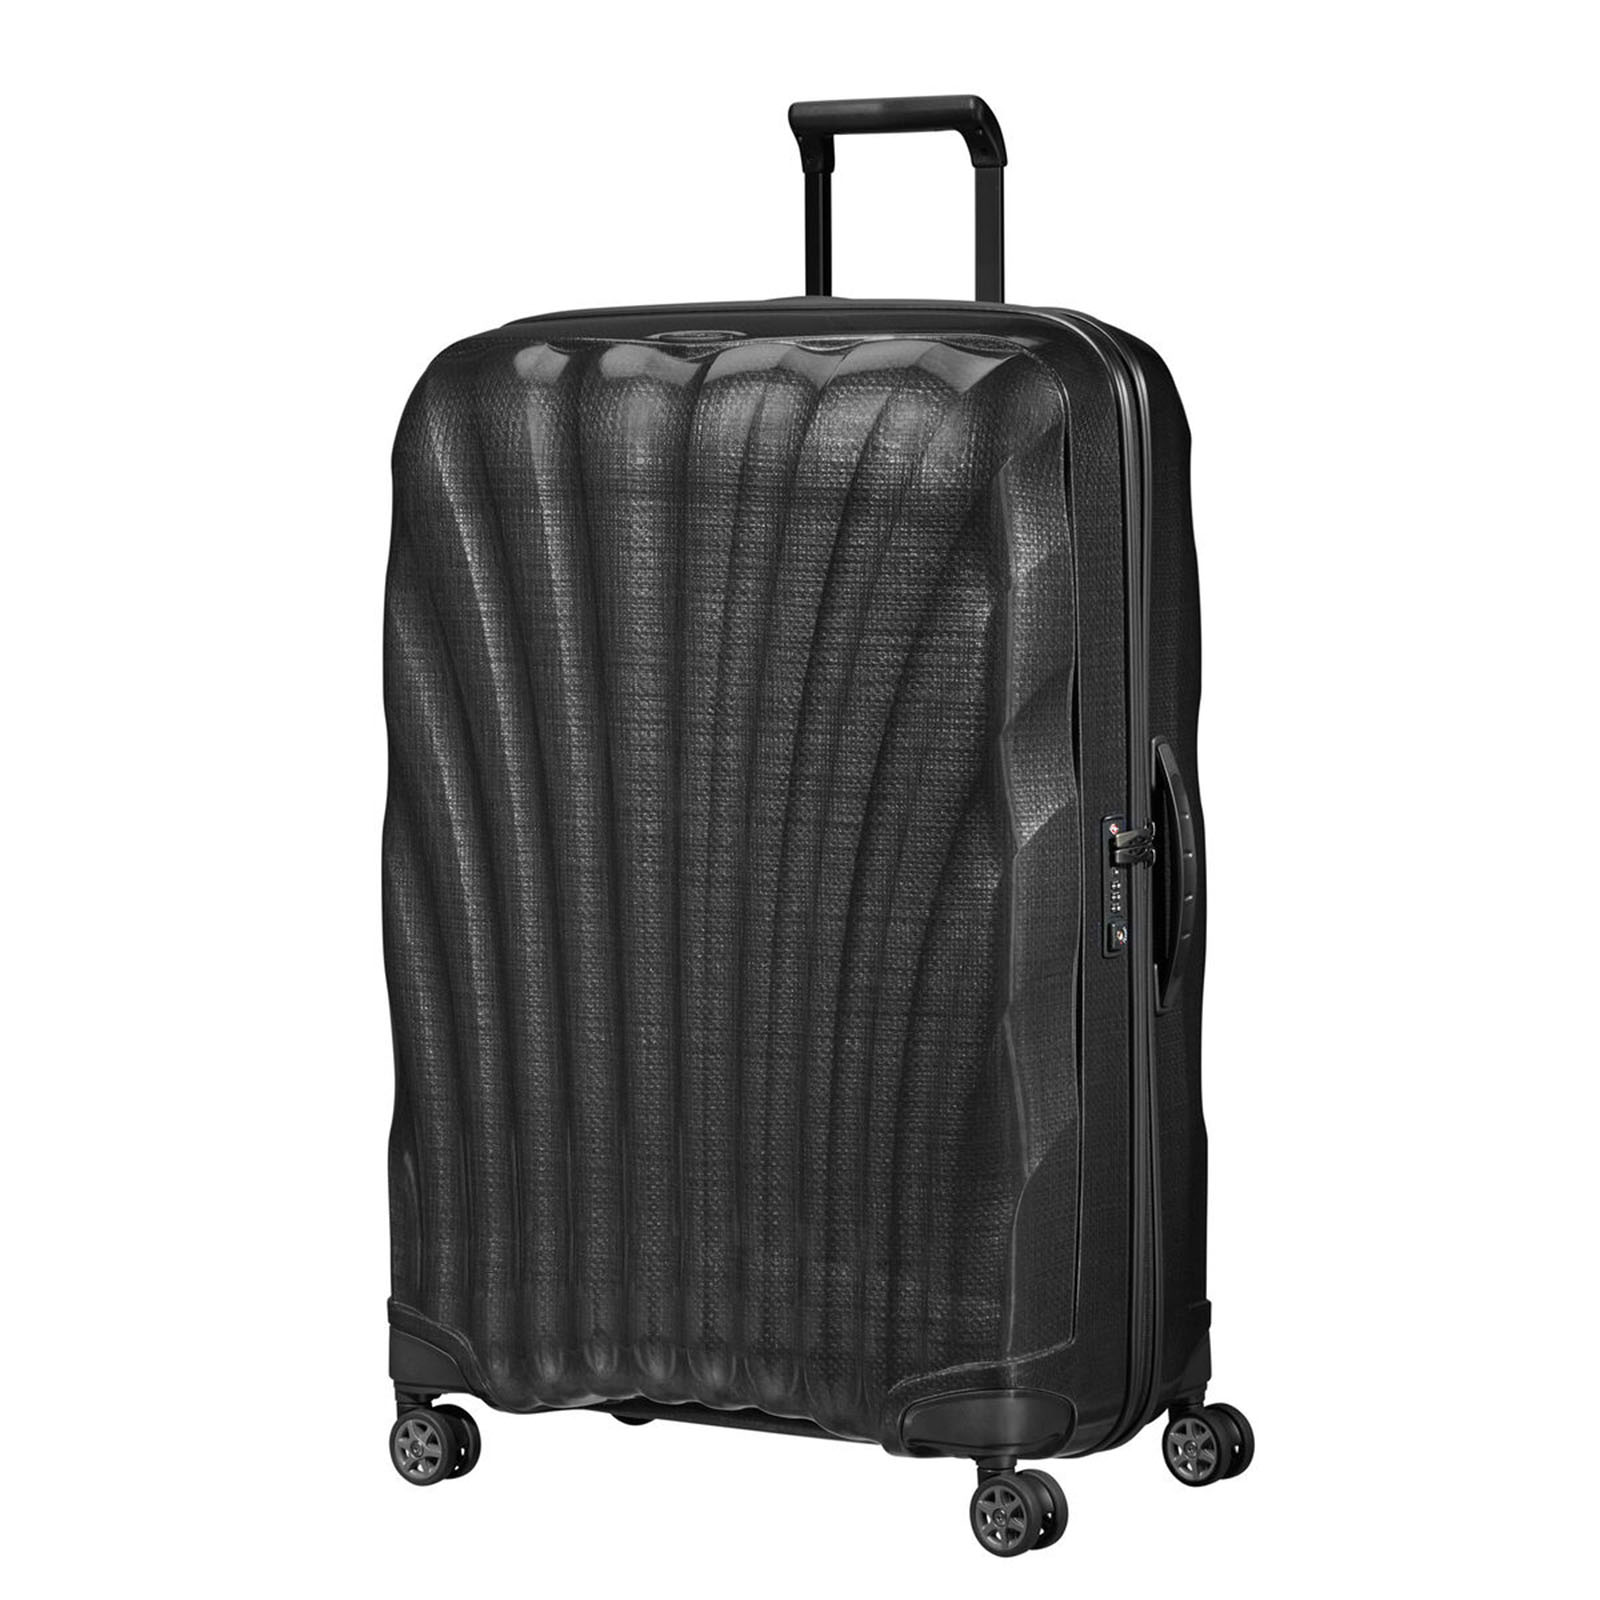 Samsonite-C-Lite-81cm-Suitcase-Black-Front-Angle